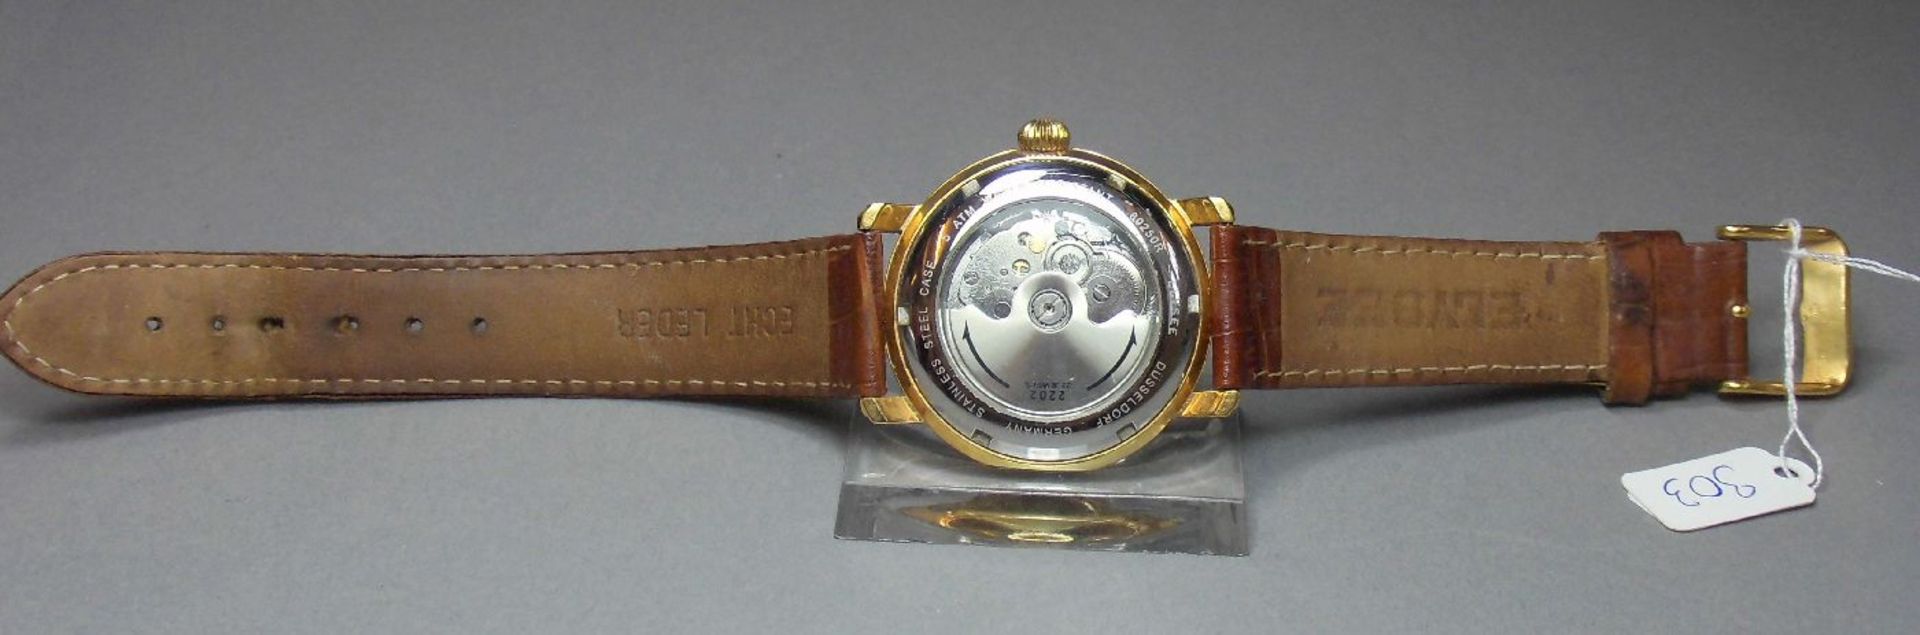 ARMBANDUHR / wristwatch, ELYSEE Uhren GmbH / Deutschland. Rundes goldfarbenes Edelstahlgehäuse mit - Image 7 of 7